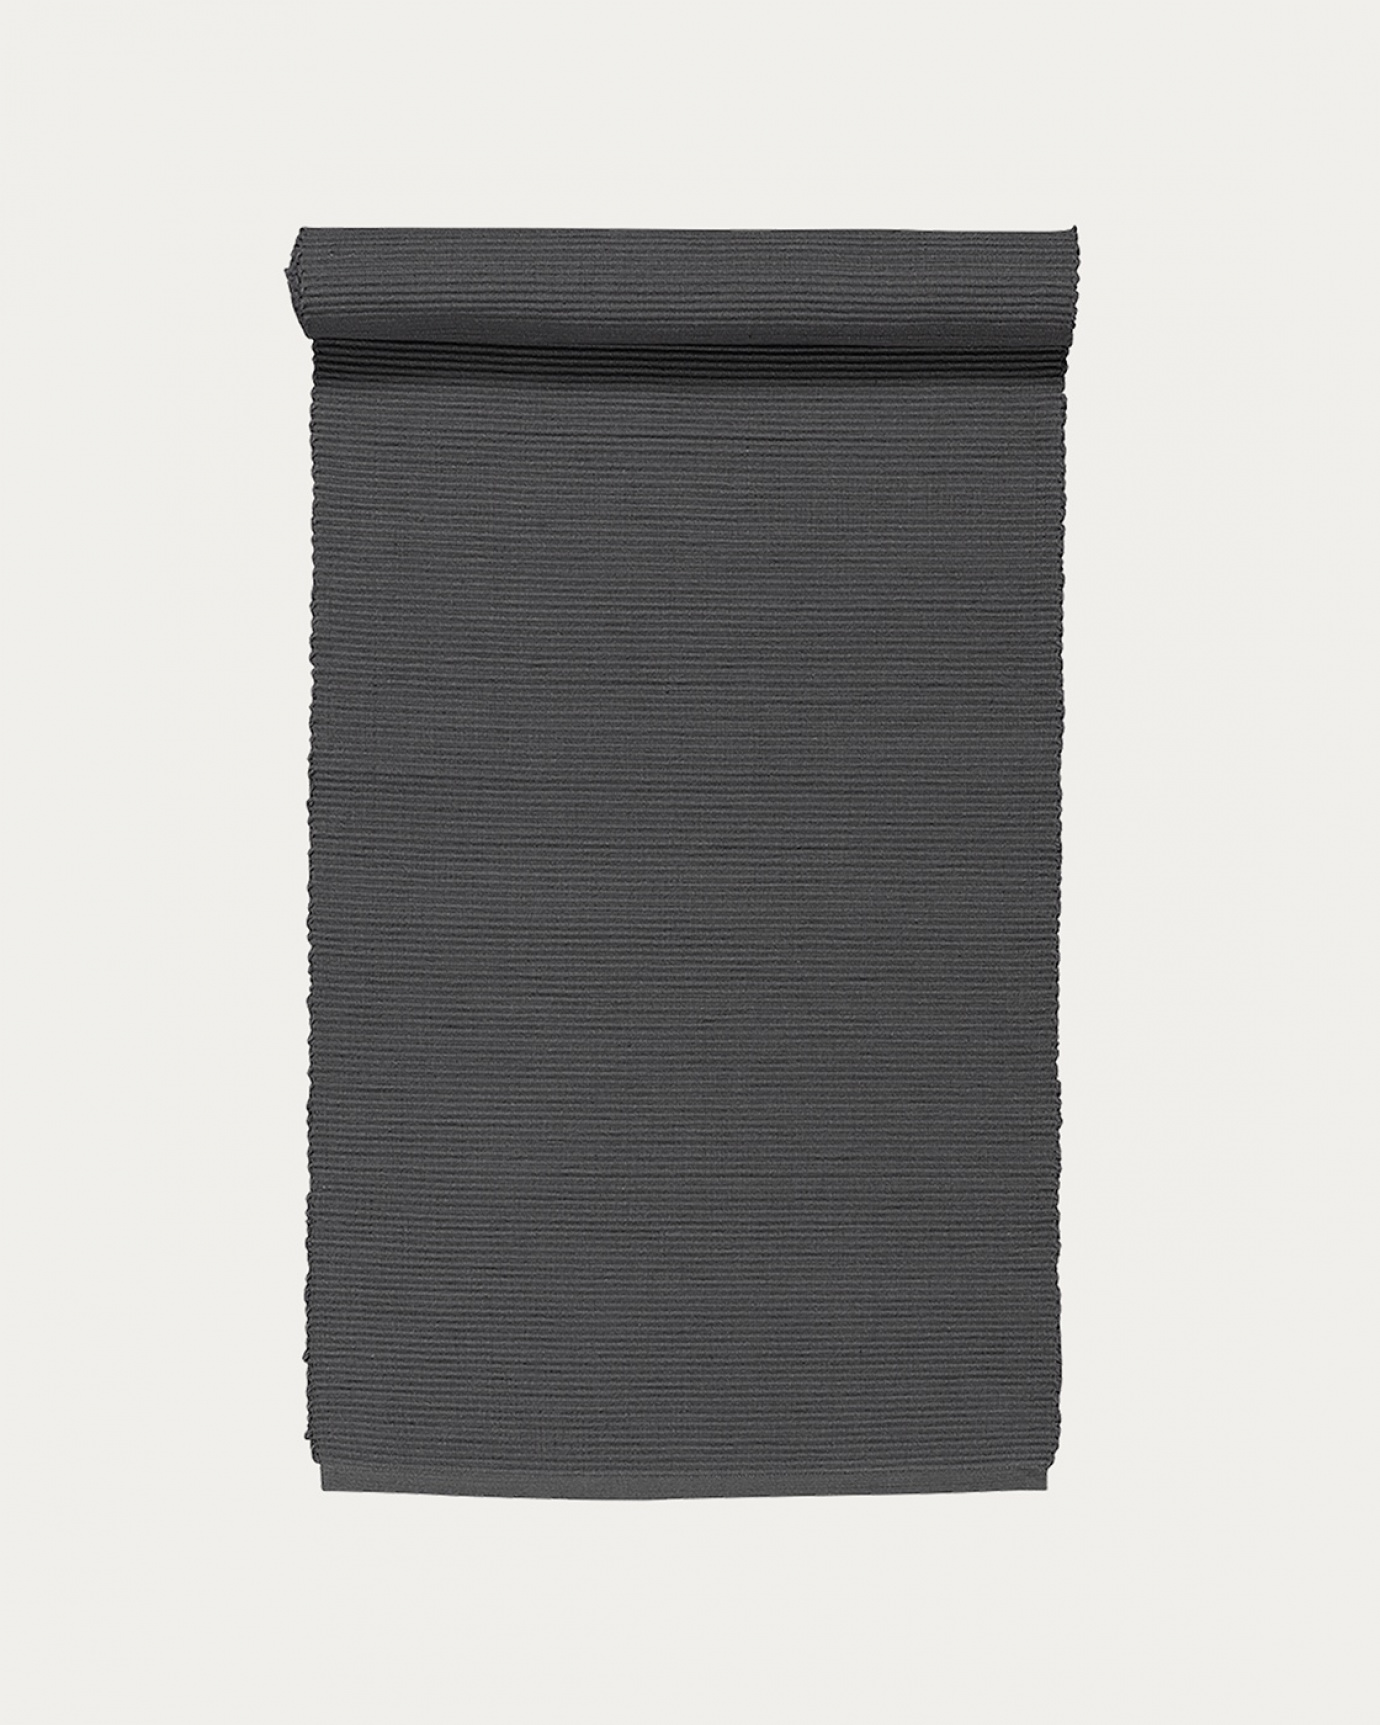 Produktbild granitgrau UNI Tischläufer aus weicher Baumwolle in Rippenqualität von LINUM DESIGN. Größe 45x150 cm.